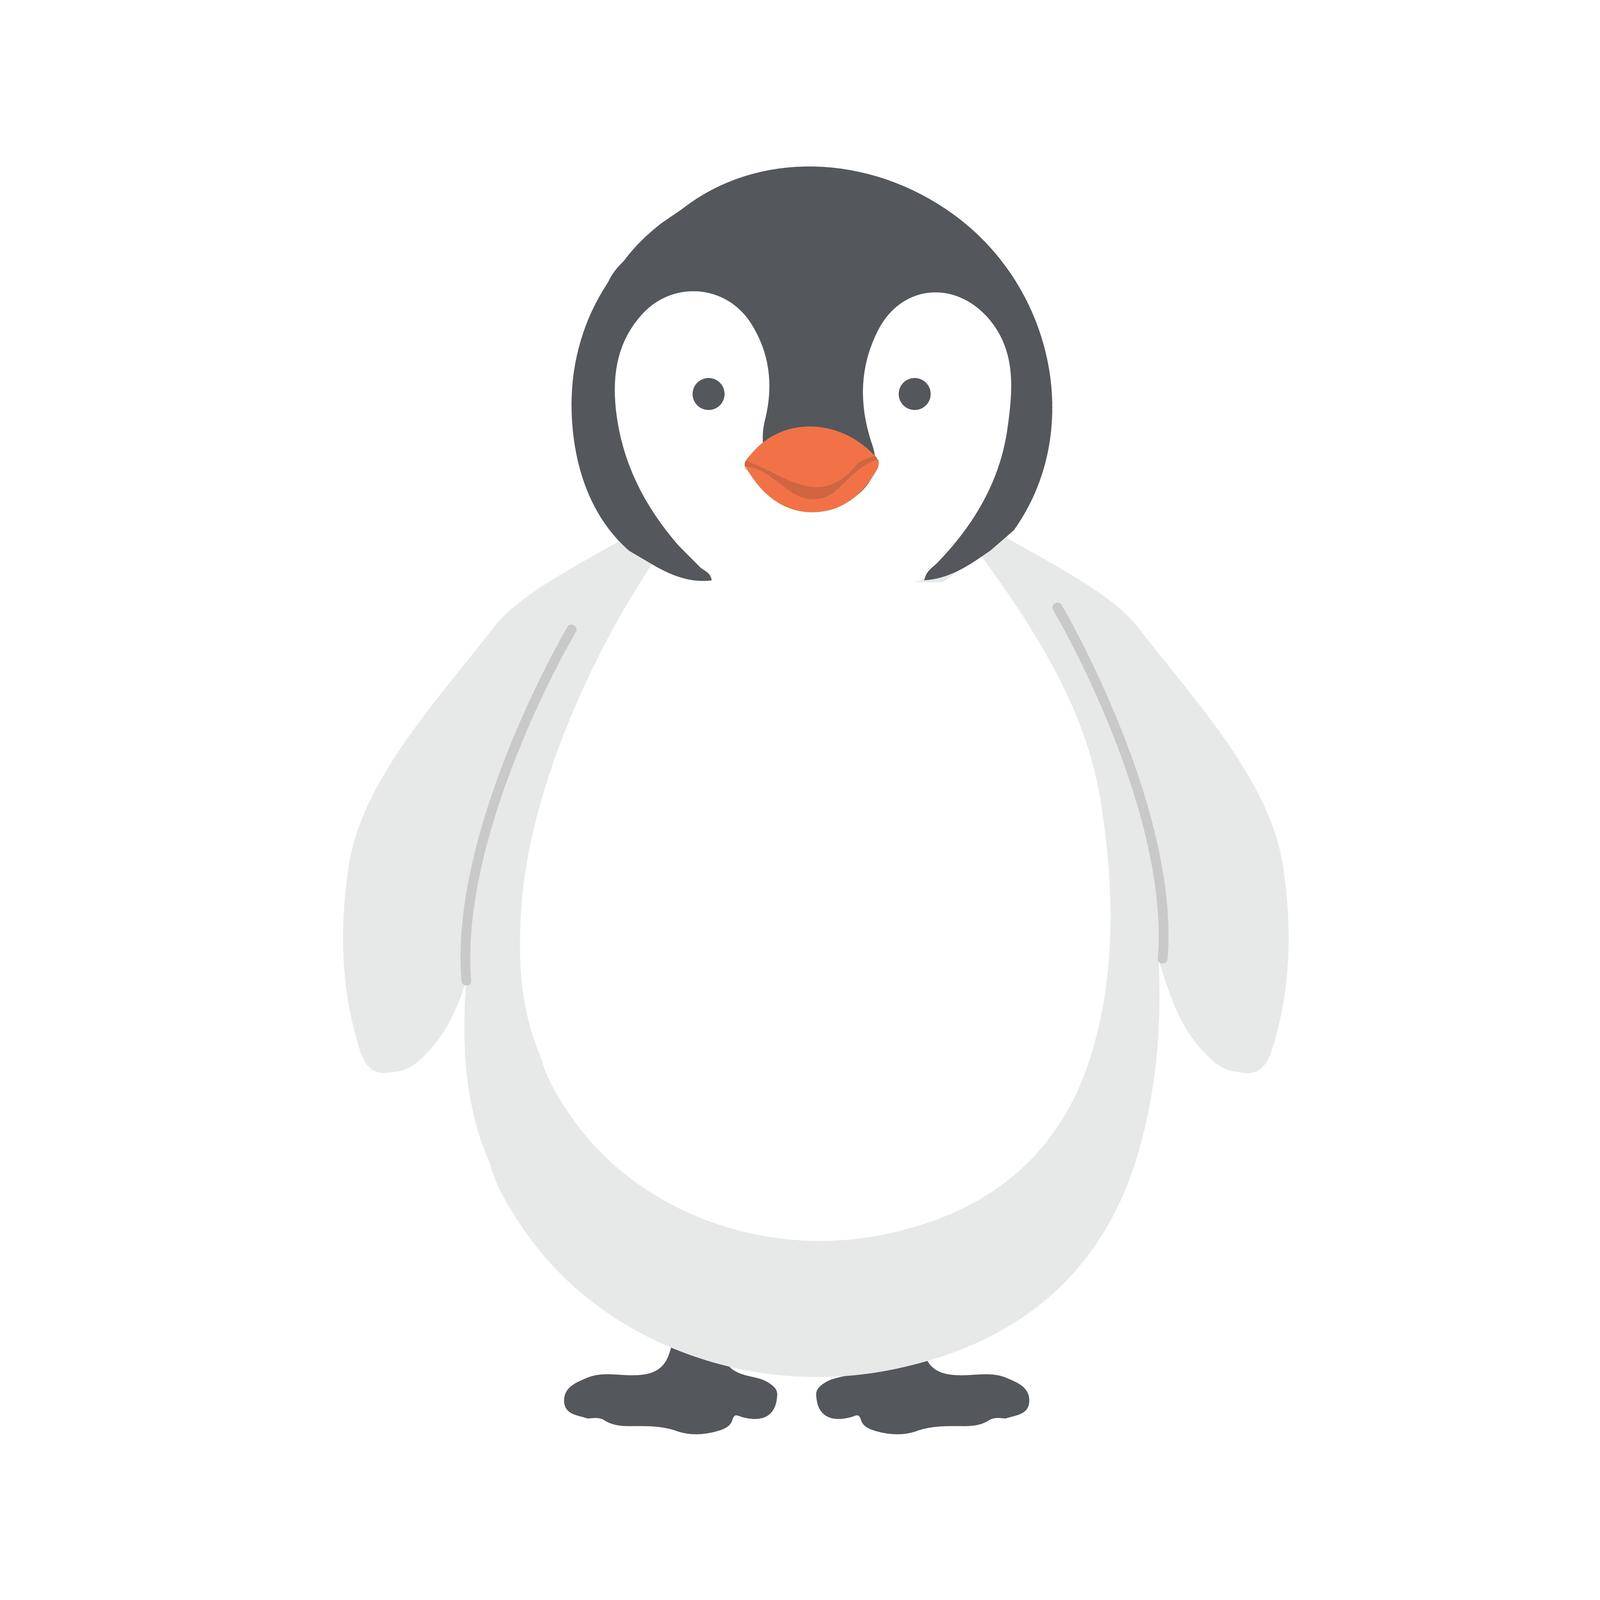 Cute baby emperor penguin cartoon vector icon